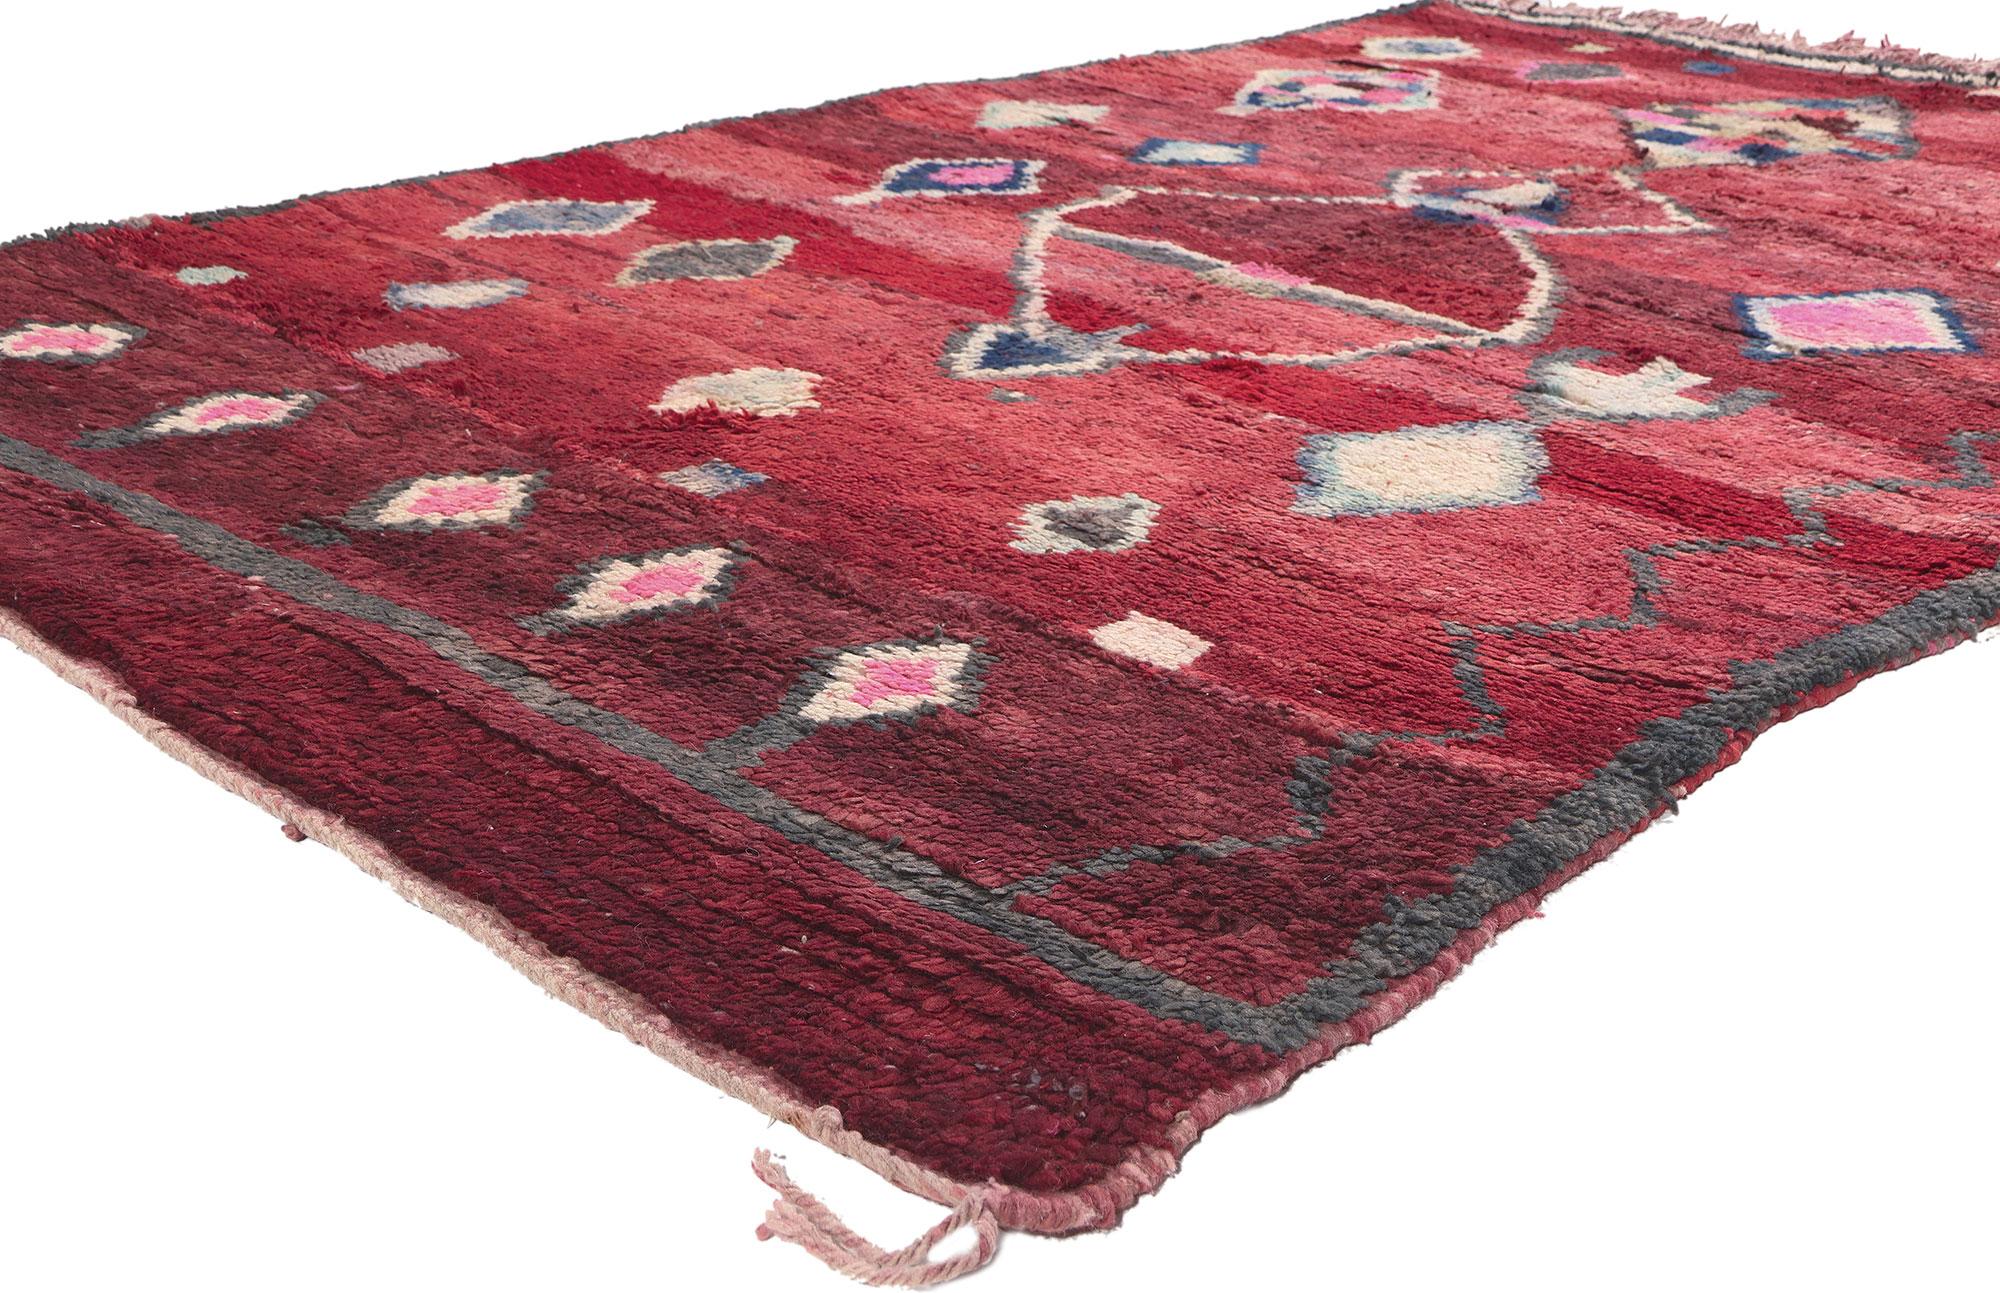 20278 Vintage Rot Boujad Marokkanischer Teppich mit Tribal Stil 05'01 x 08'00. 
Tauchen Sie ein in den Boho-Chic der Boujad-Teppiche, die aus der Stadt Boujad in der Region Khouribga stammen, einem historischen Pilgerzentrum und einst lebhaften